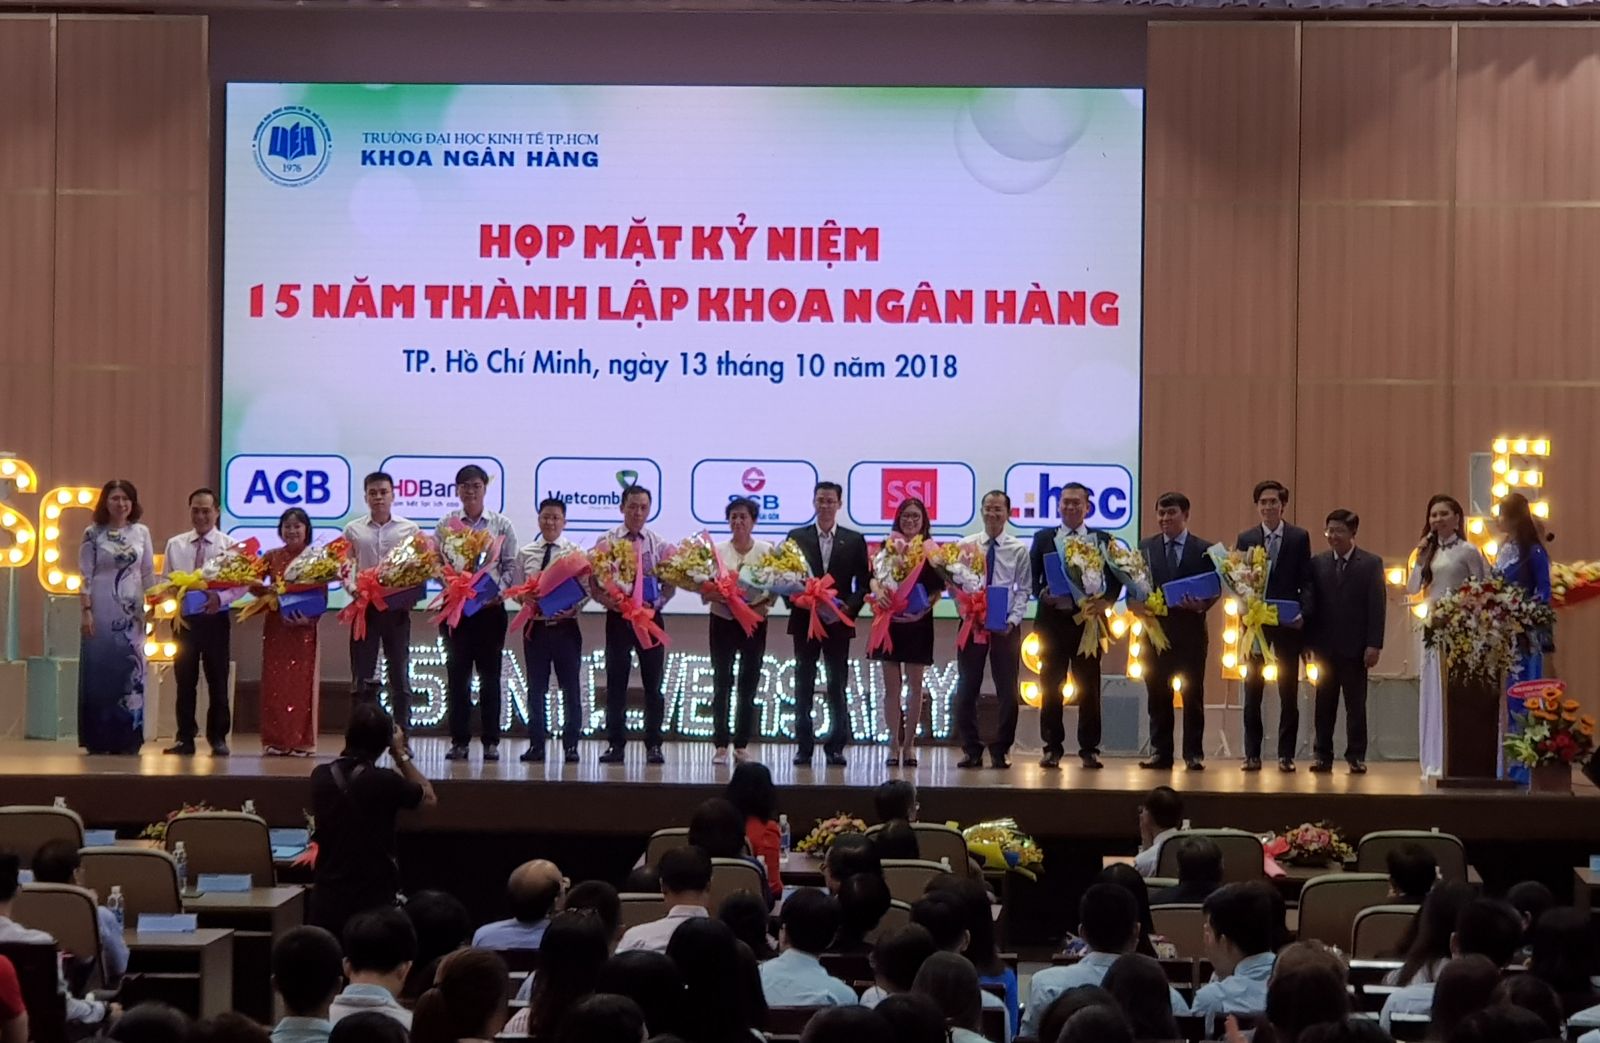  Ông Nguyễn Thành Công – Phó Giám đốc Phòng Đào tạo Dịch vụ - Học viện SCB (Thứ 5 bên phải sang) nhận hoa cám ơn từ BGH của Trường Đại học Kinh tế Tp.HCM cho việc tài trợ học bổng trị giá 30 triệu đồng.